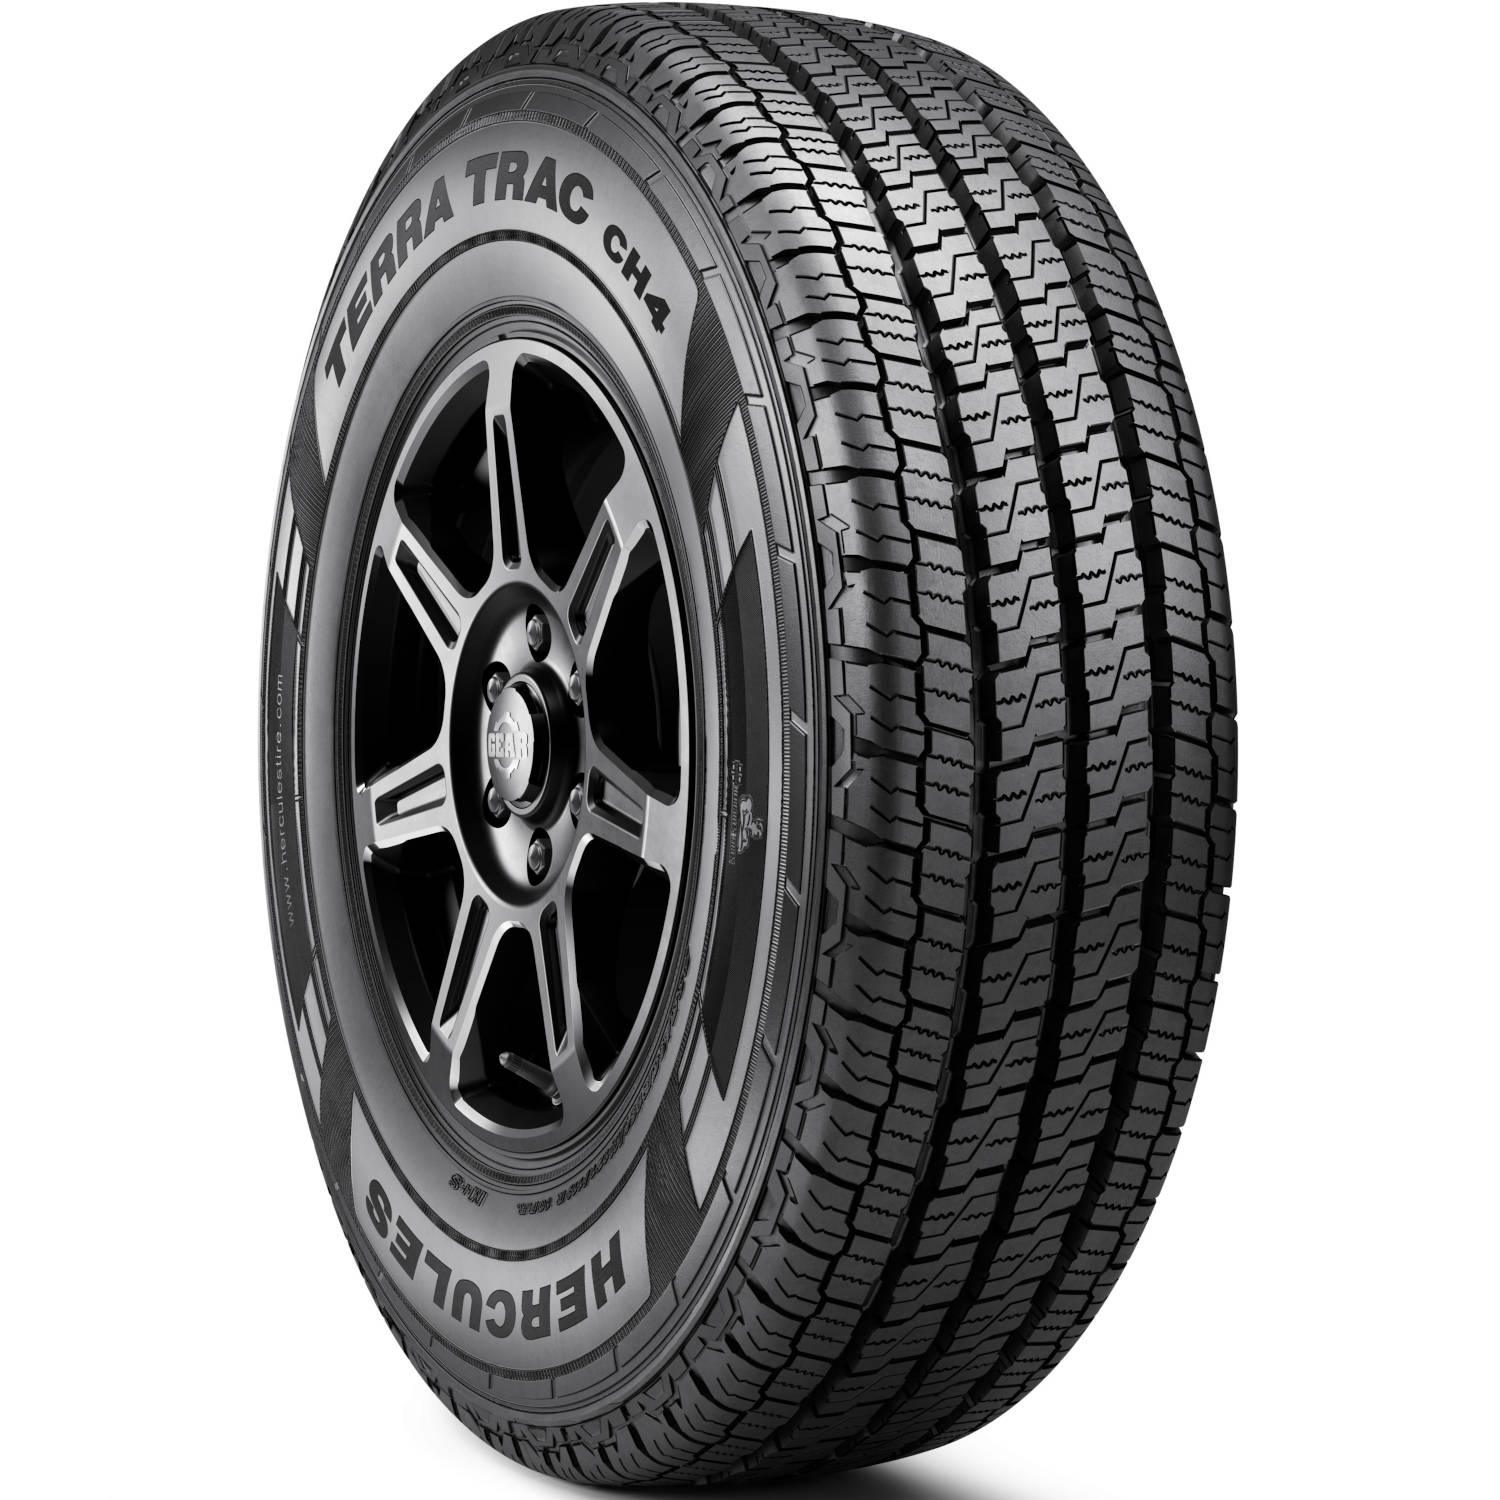 HERCULES TERRA TRAC CH4 LT275/70R18 (33.1X10.8R 18) Tires